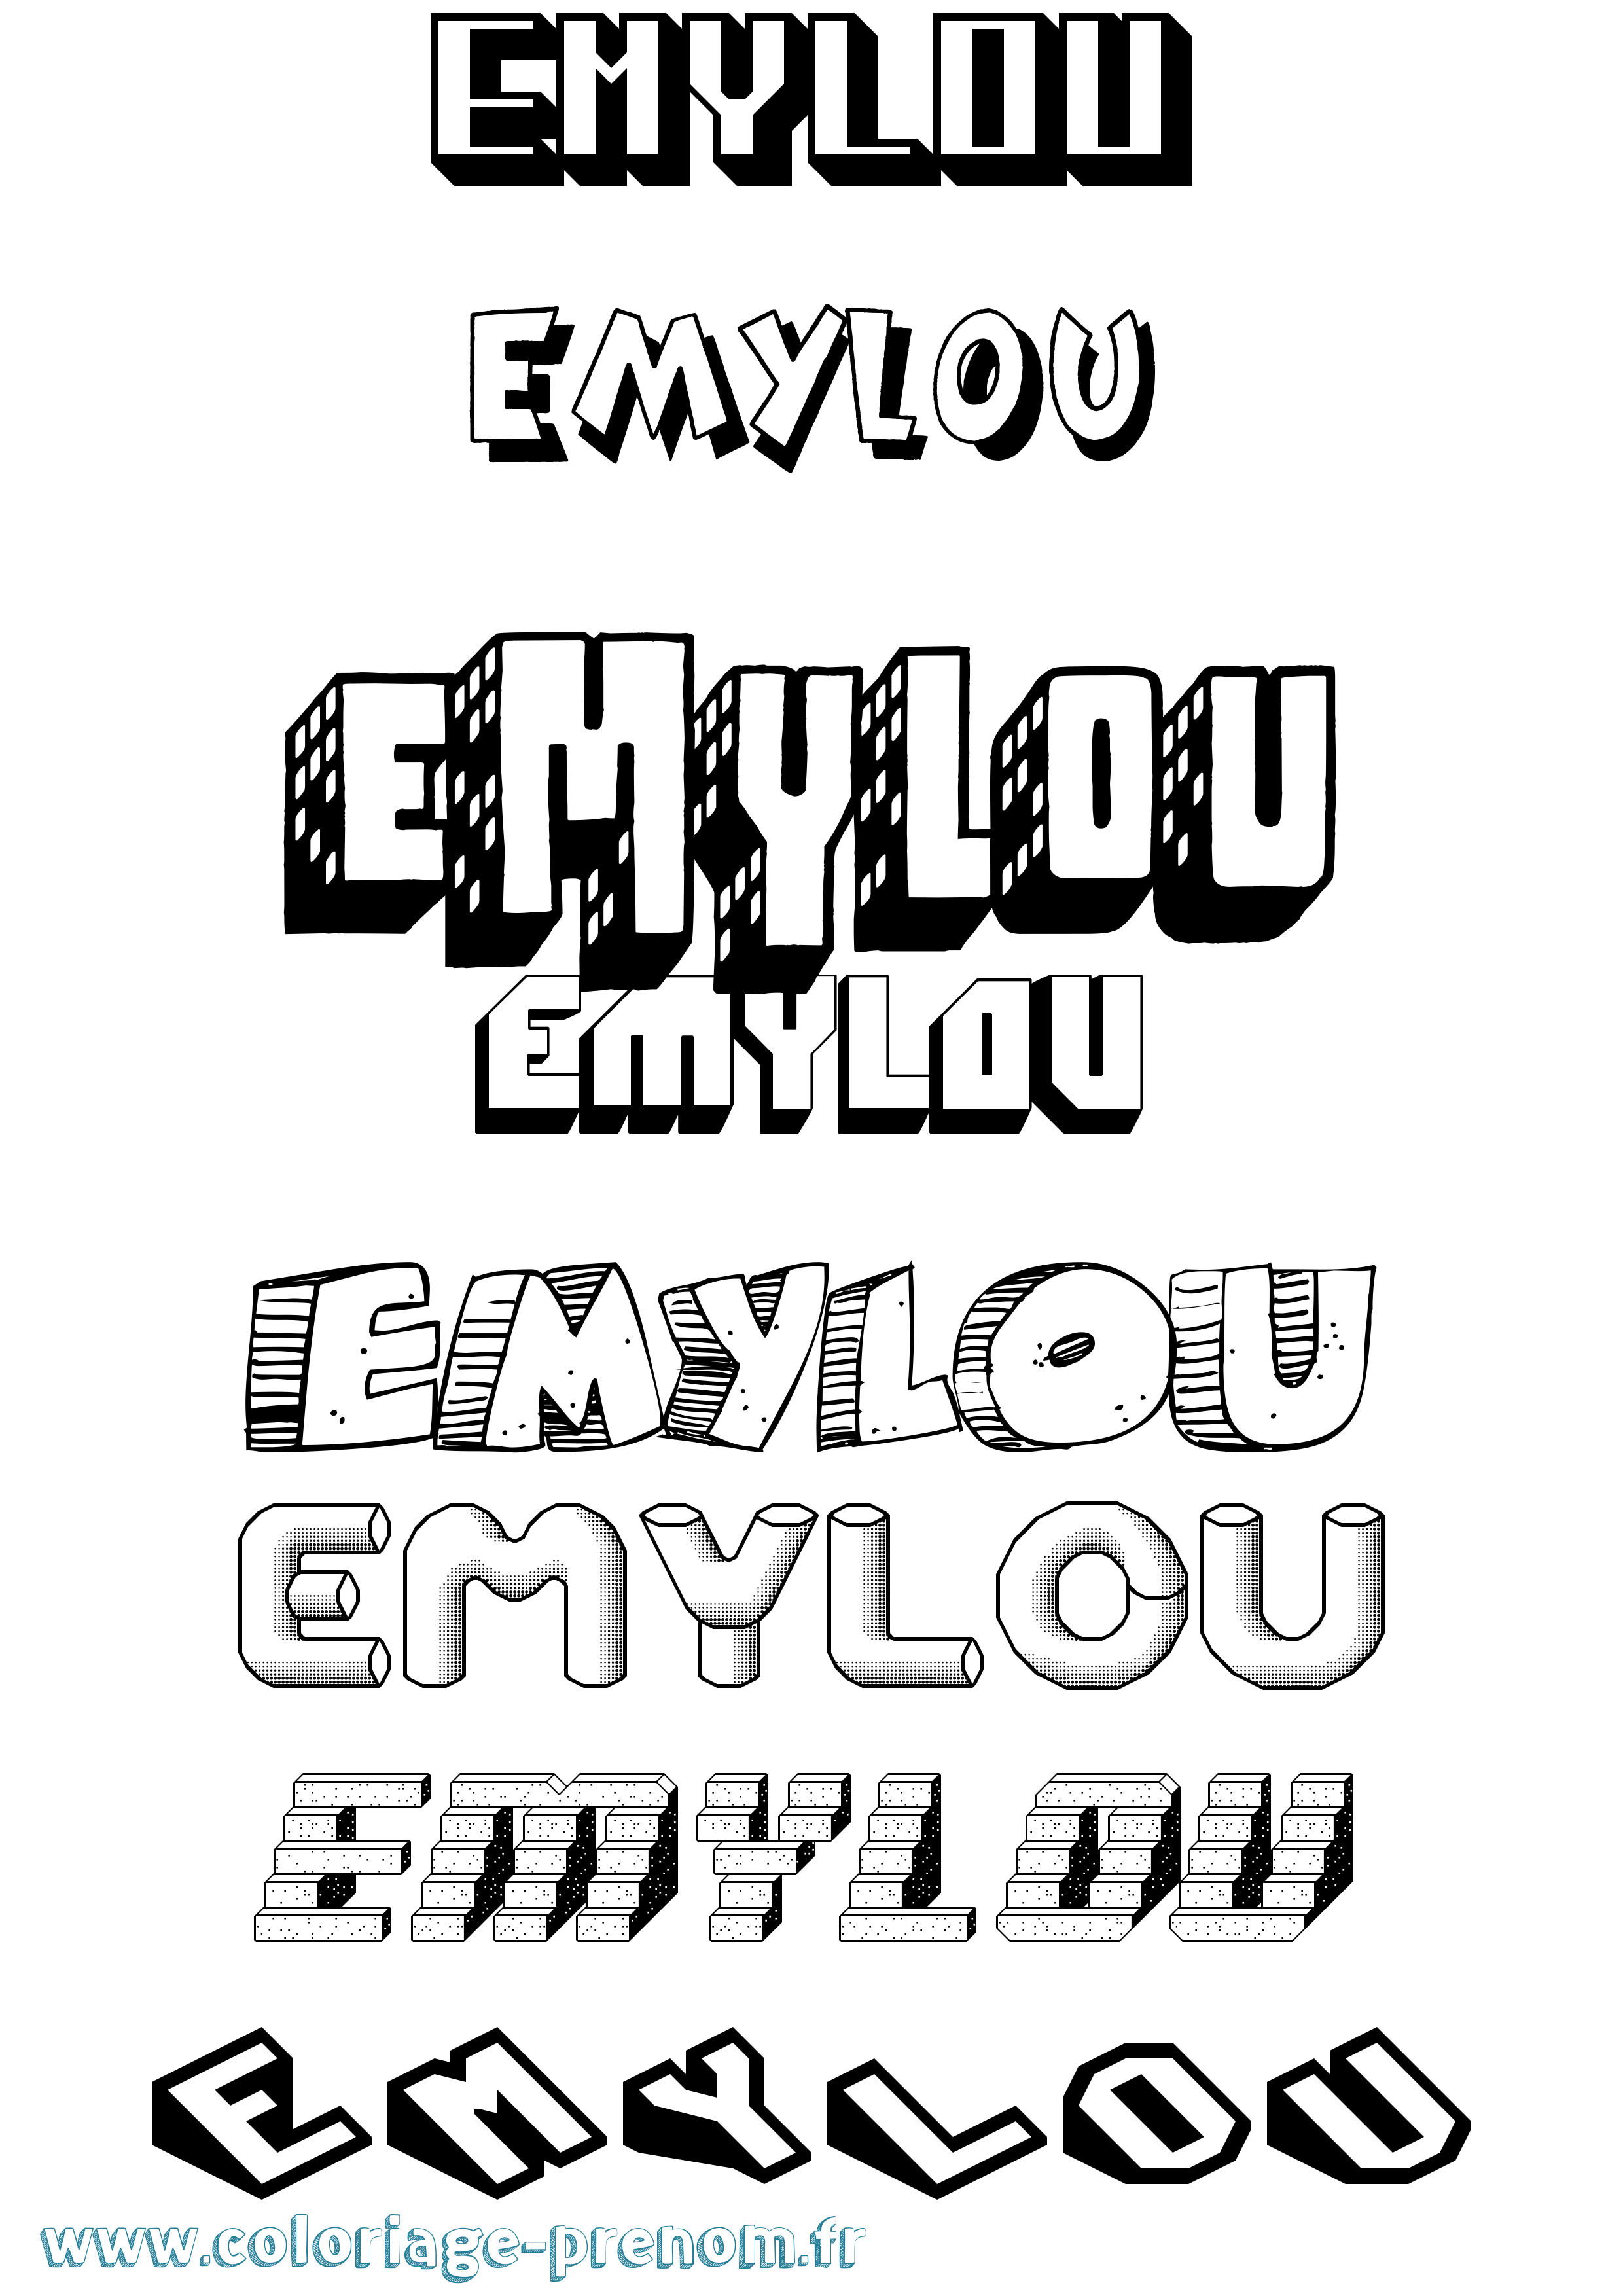 Coloriage prénom Emylou Effet 3D